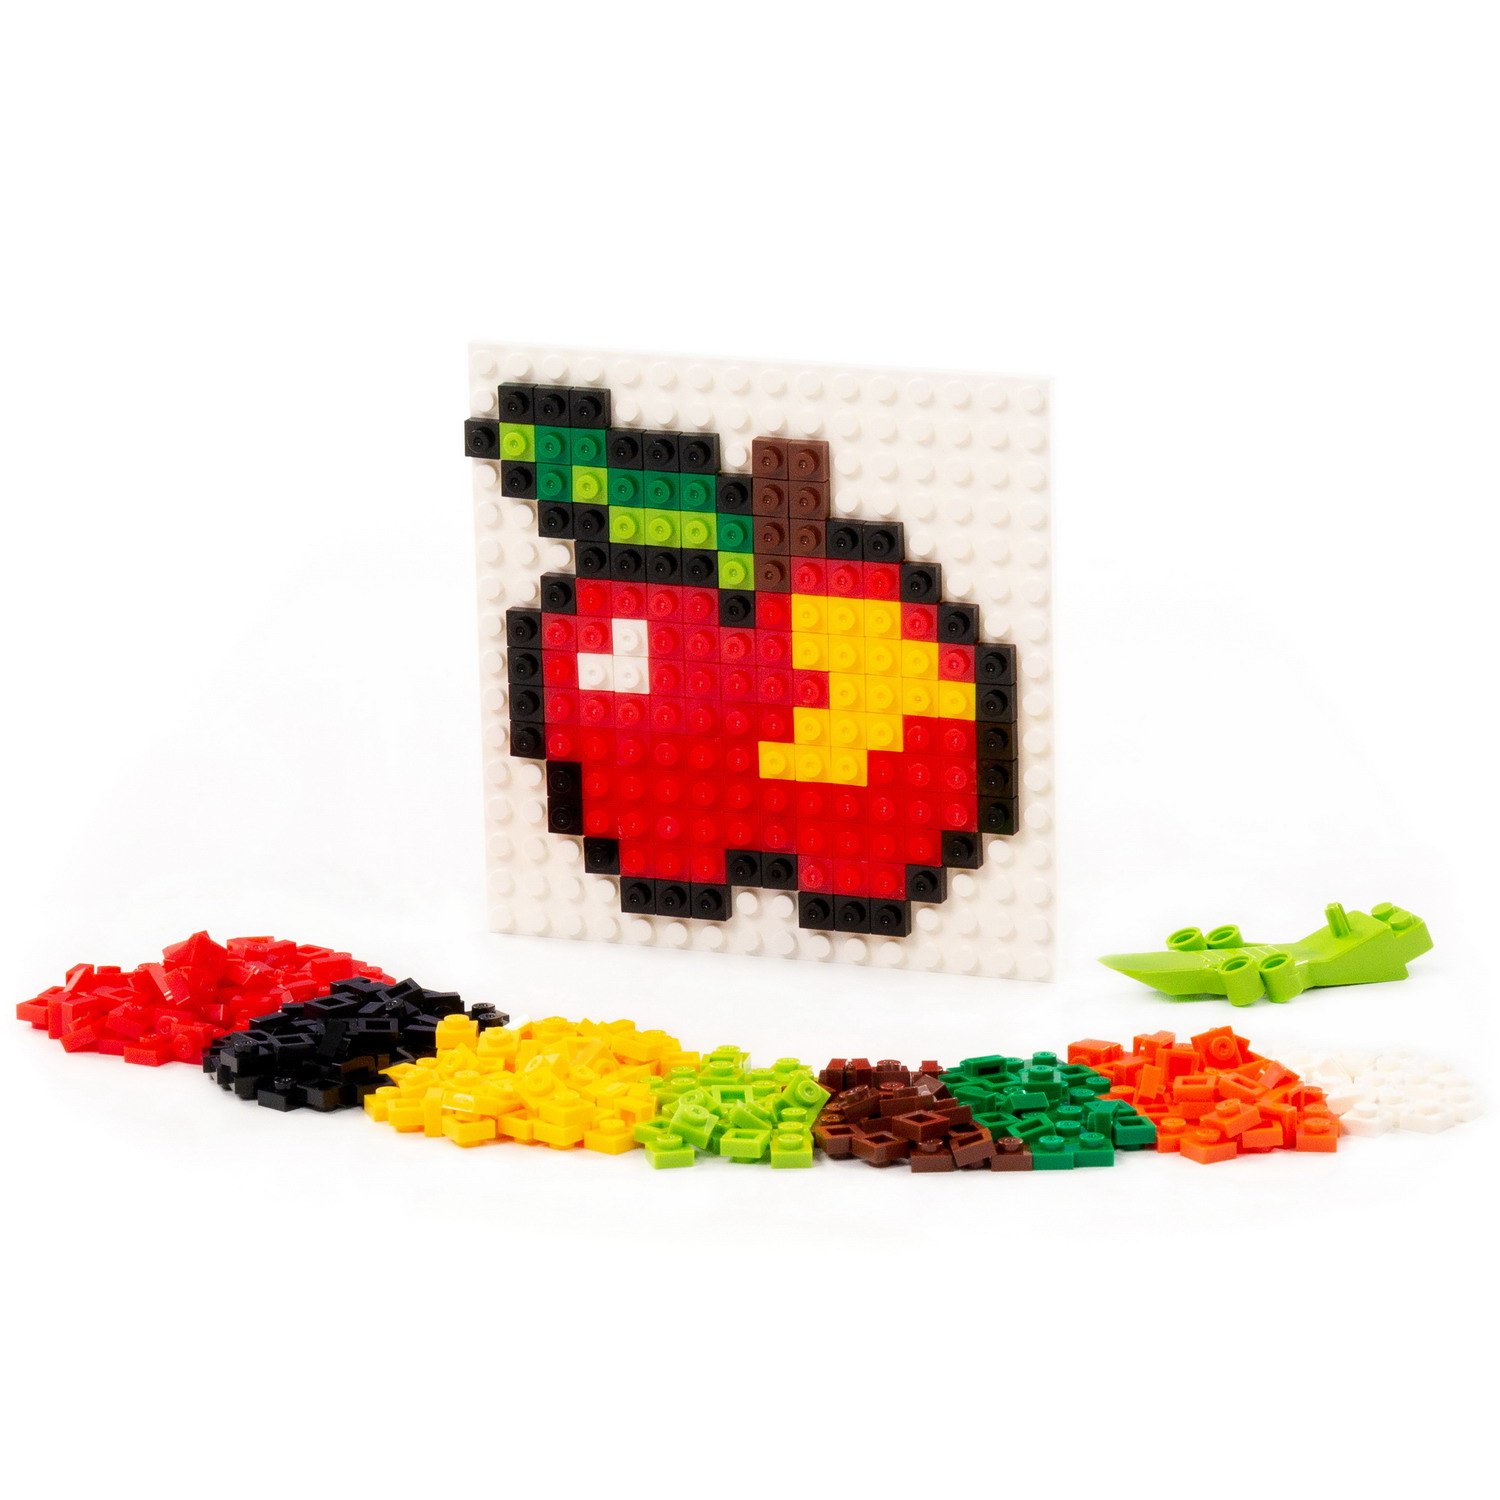 Конструктор ПОЛЕСЬЕ Классик Мозаика №6 фрукты-ягоды 350 элементов создан для продажи как построить бизнес который сможет про ать без вас